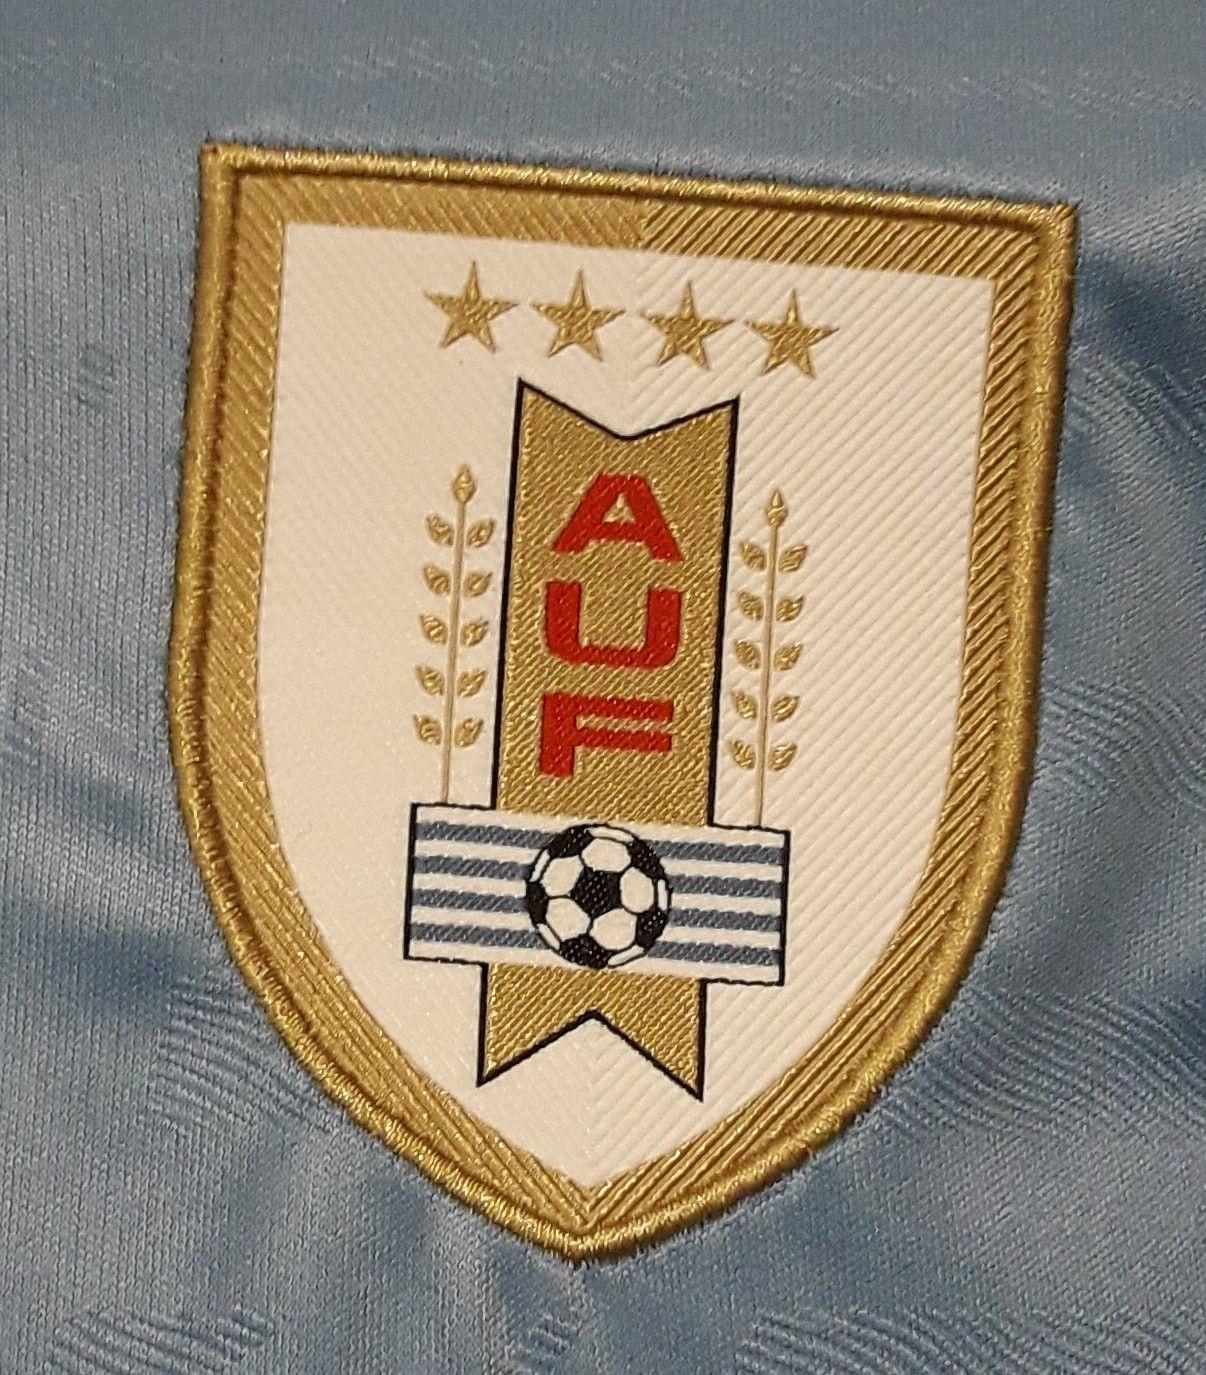 Uruguay Logo - Why Has Uruguay's Football Team Been Awarded 4 Stars?